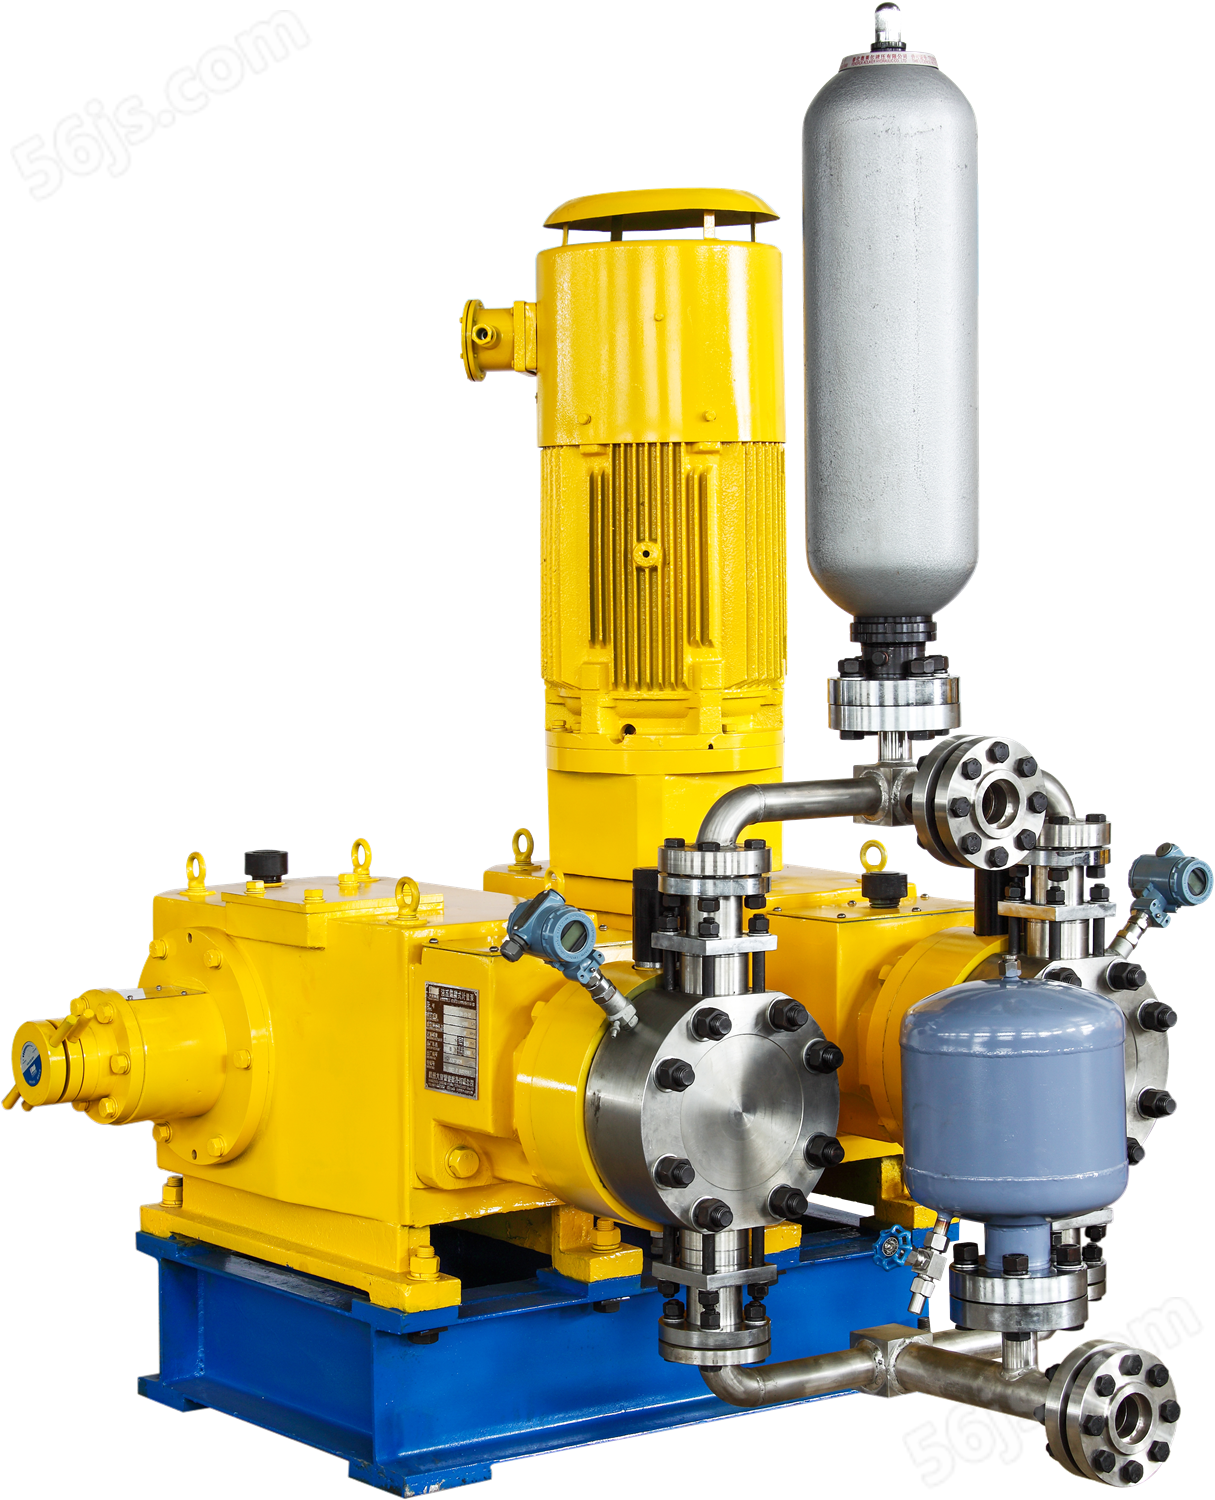 2PJ25(M)系列双泵头柱塞式/液压隔膜式计量泵